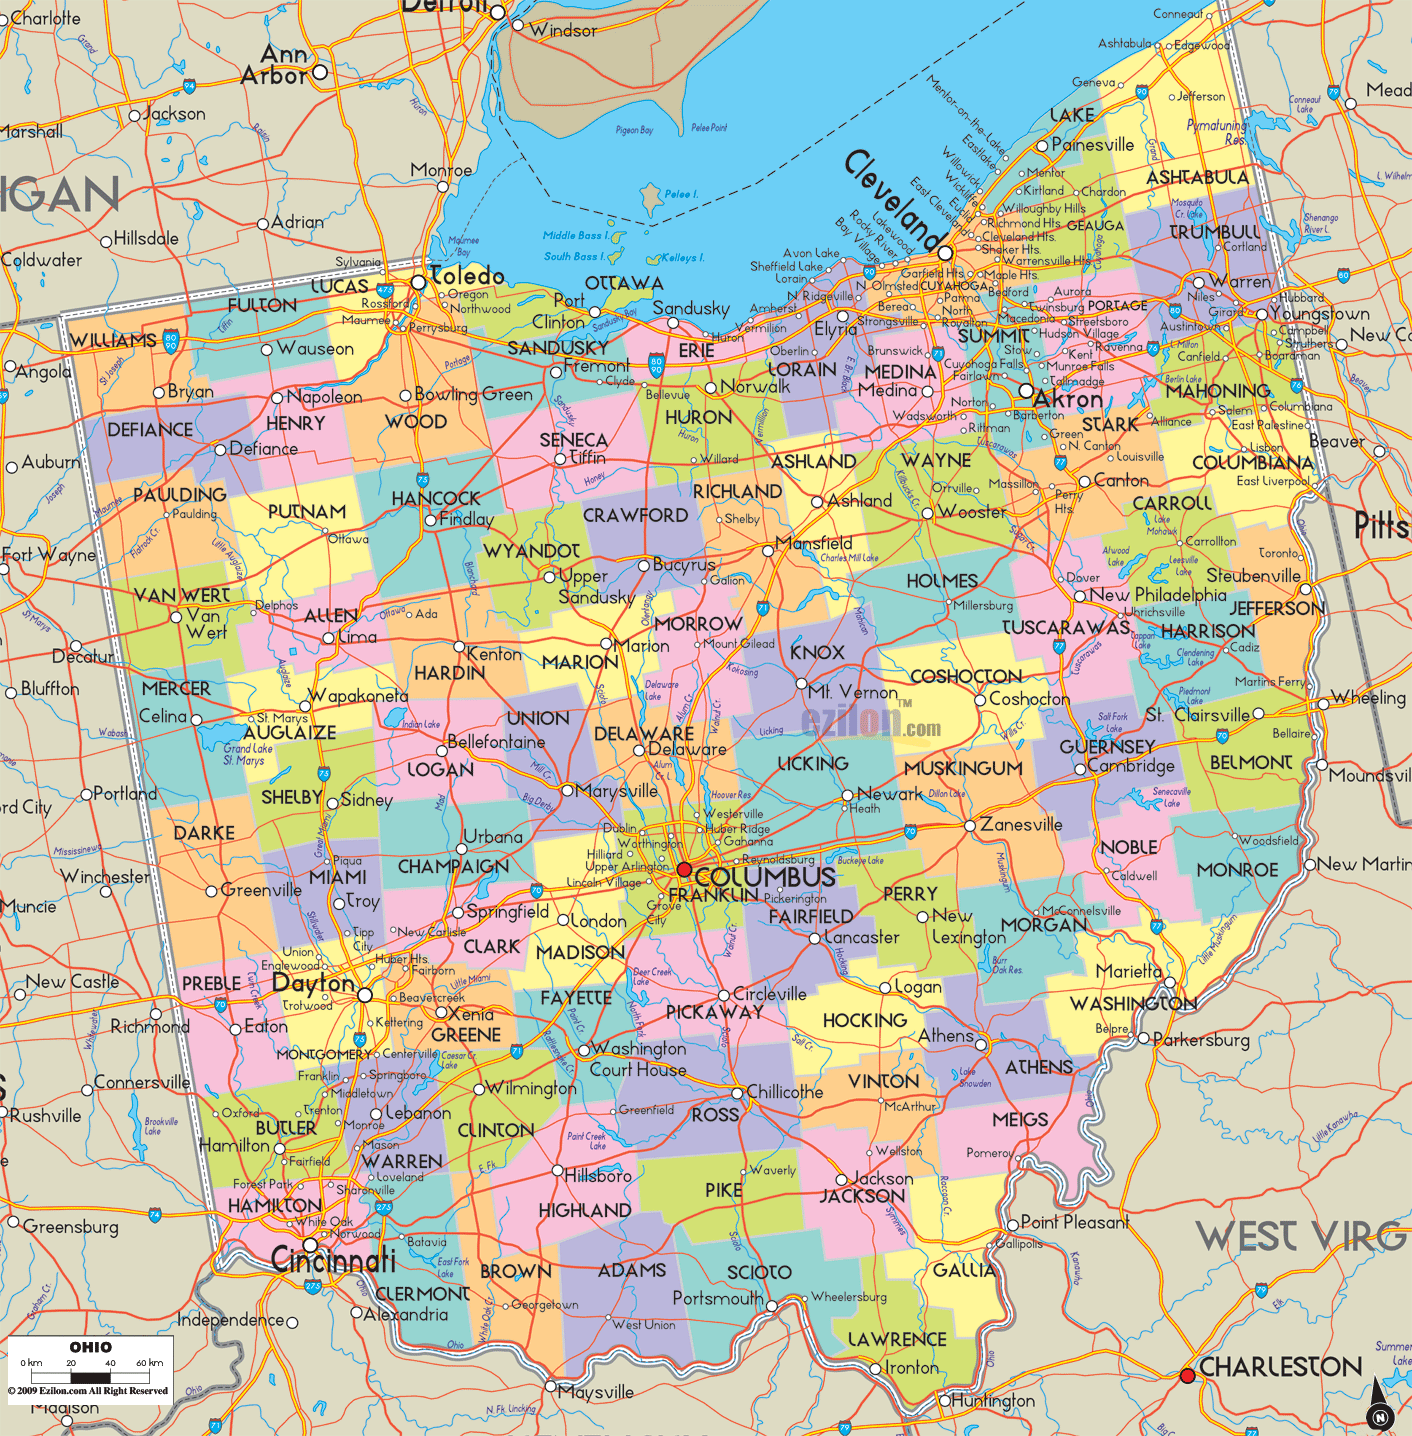 map of ohio 18 Map of Ohio